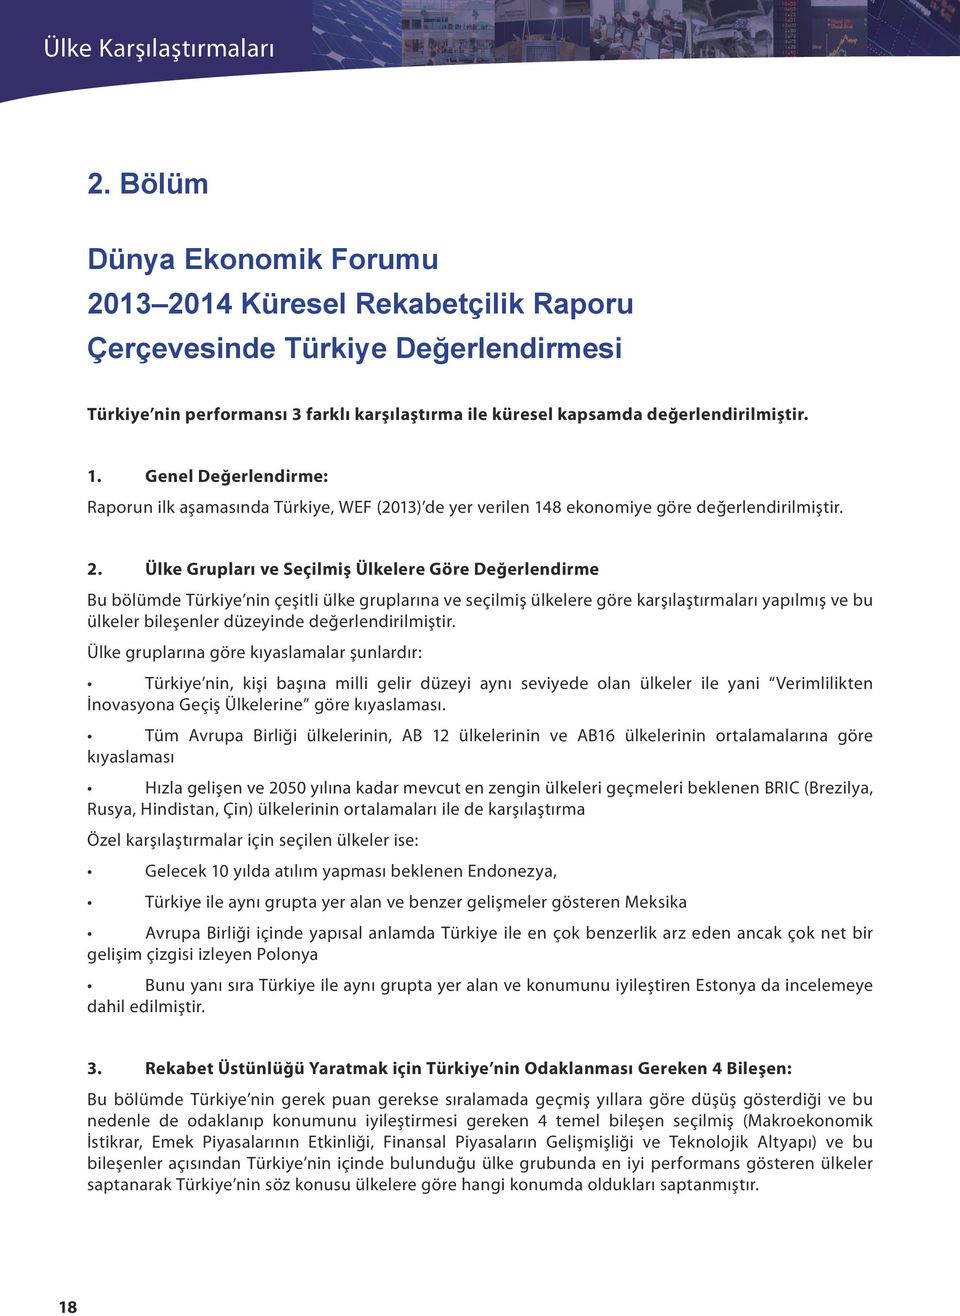 . Genel Değerlendirme: Raporun ilk aşamasında Türkiye, WEF (0) de yer verilen ekonomiye göre değerlendirilmiştir.